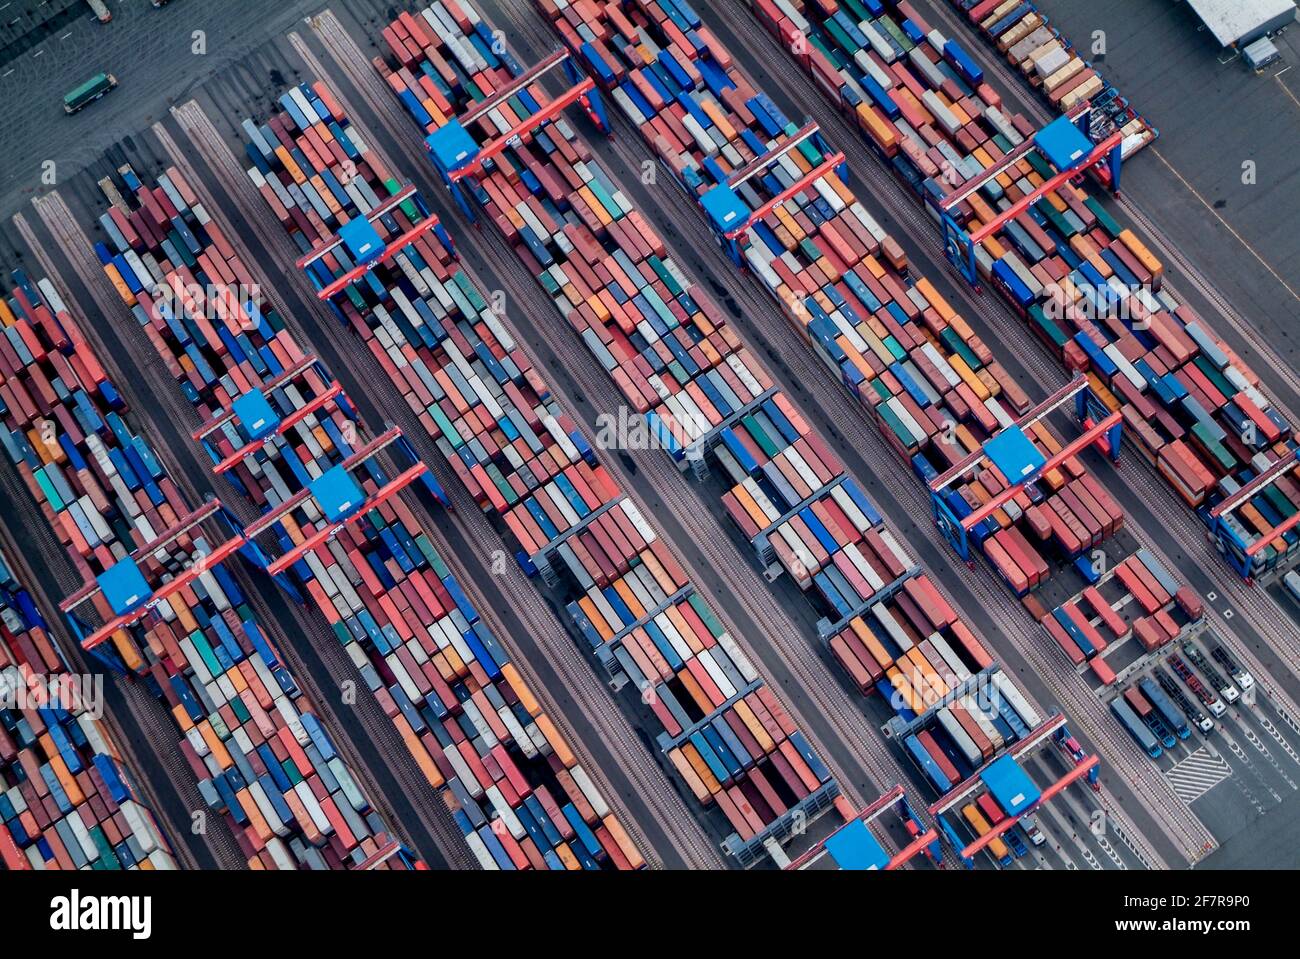 Der HHLA Container Terminal Altenwerder (CTA) ist eines der weltweit modernsten Containerterminals. Es gehört der Hamburger Hafen und Logistik AG (HH Stockfoto